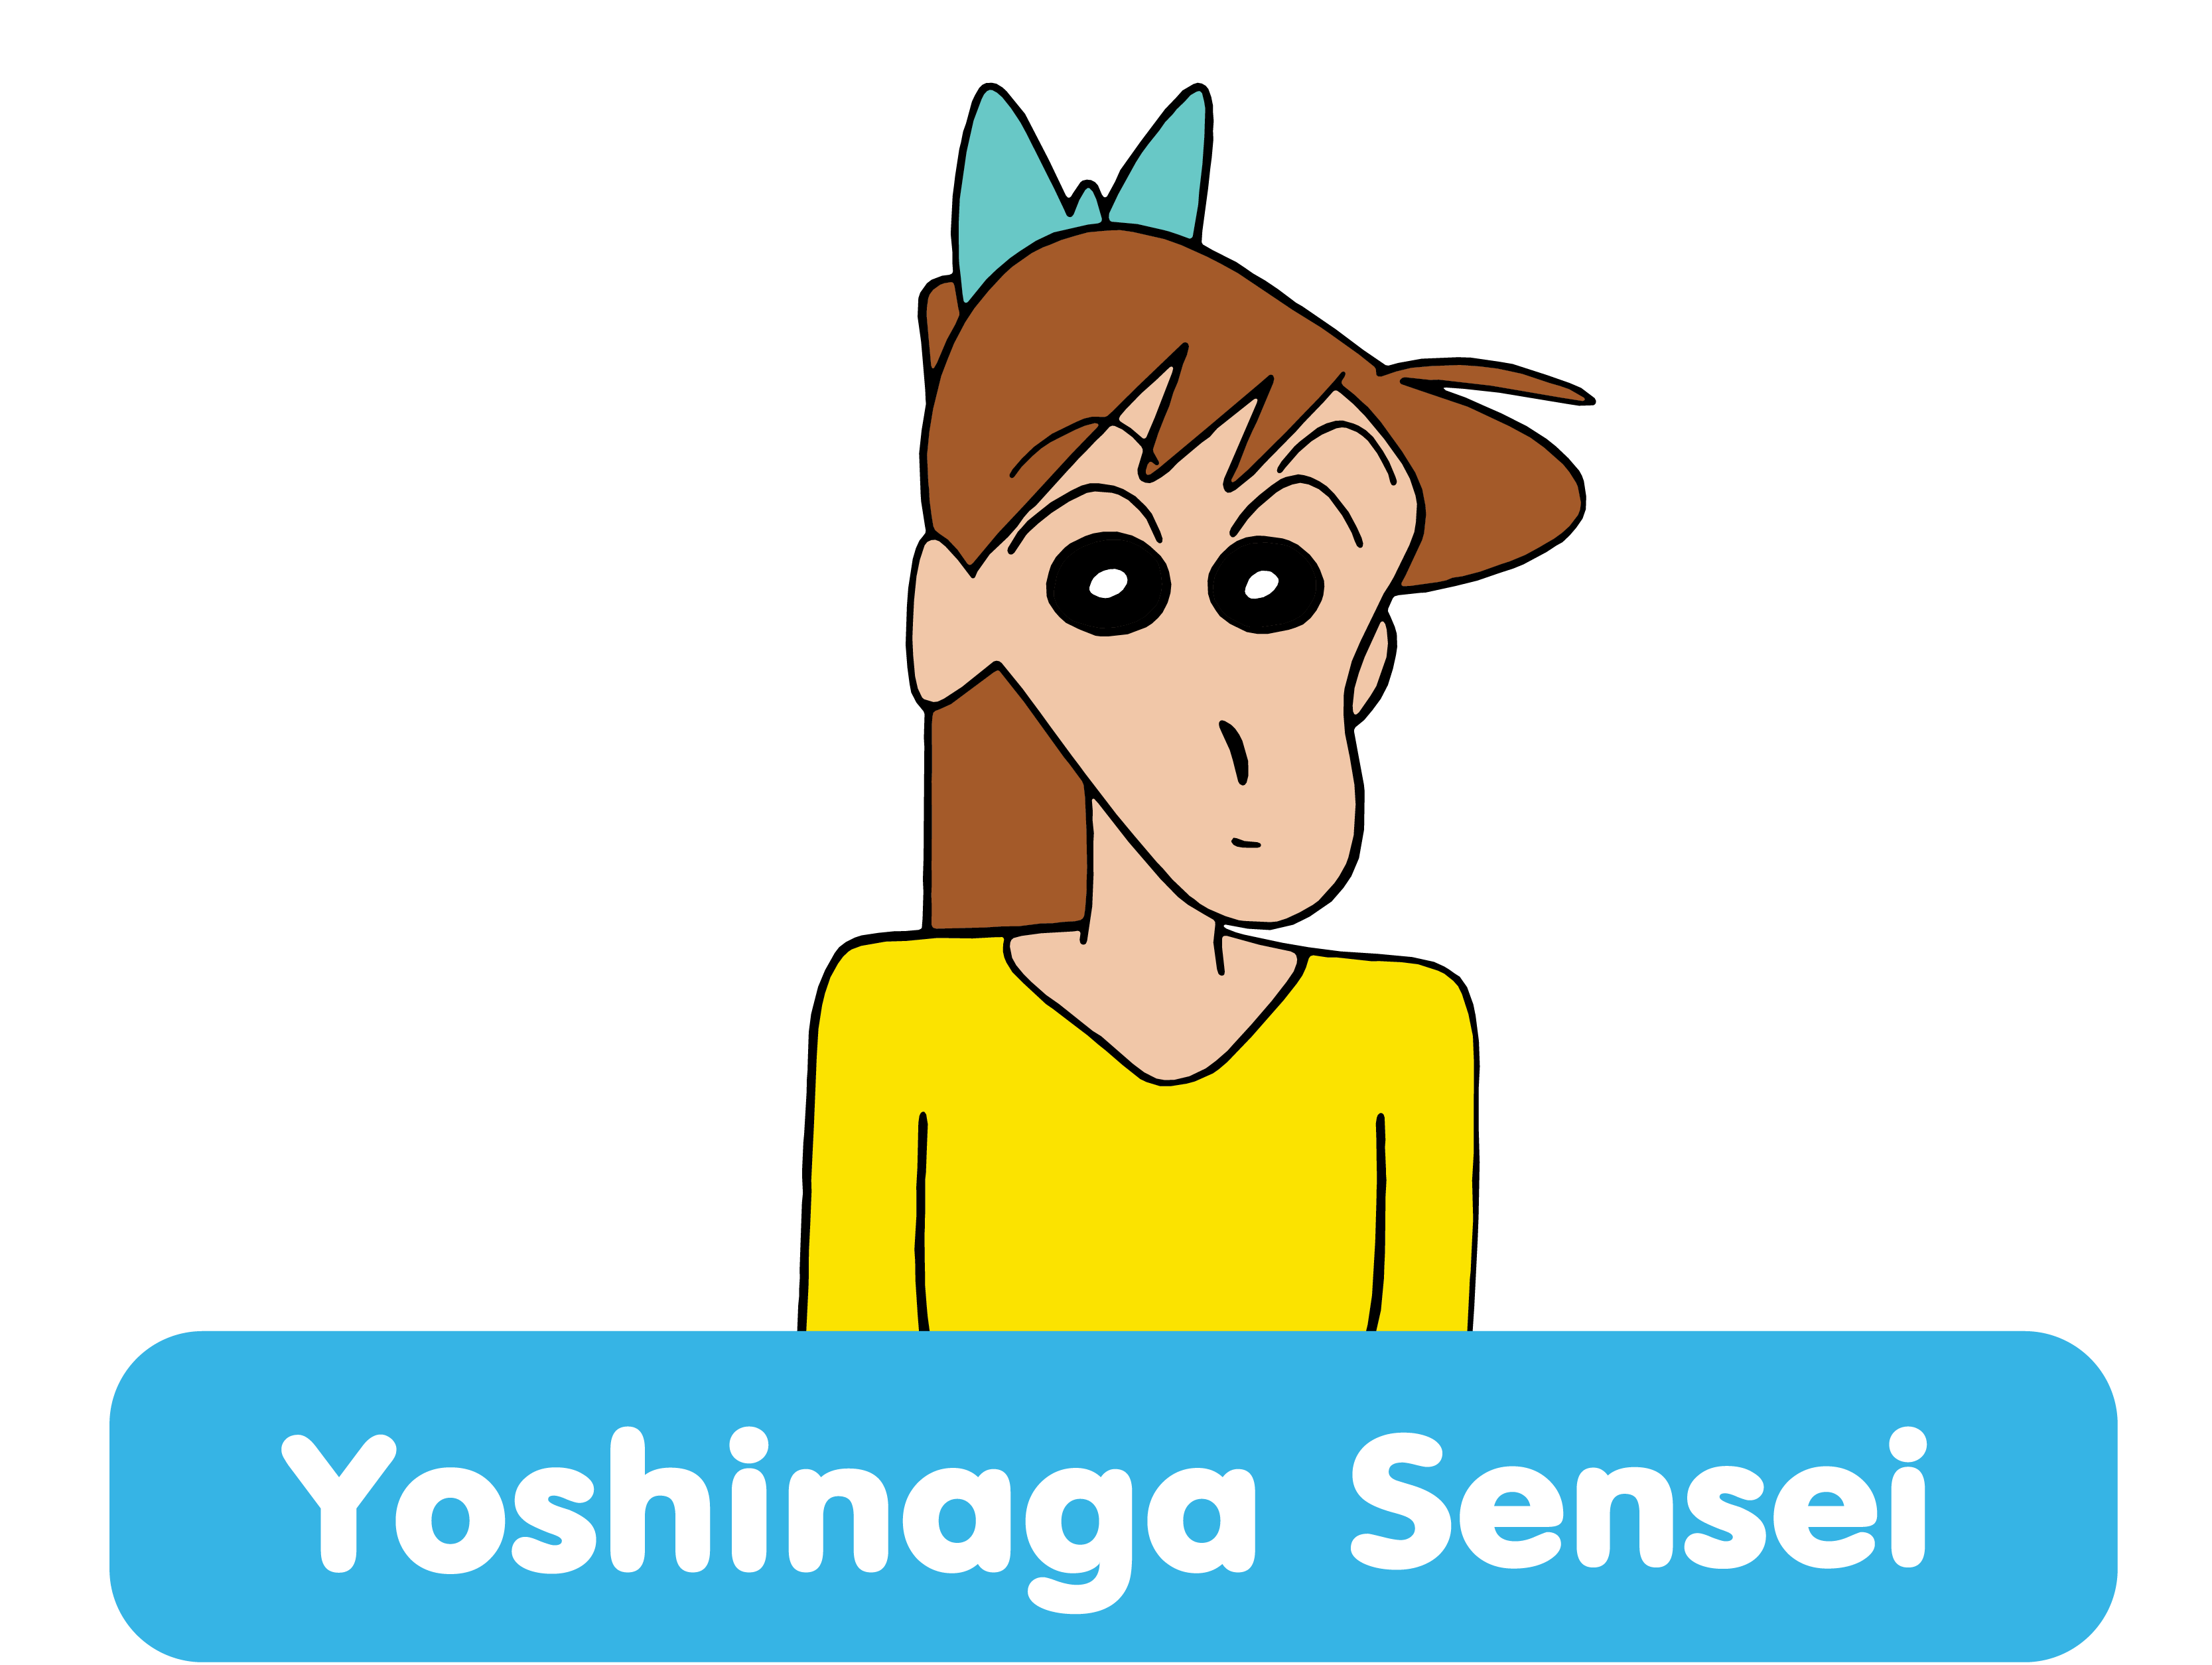 Yoshinaga Sensei